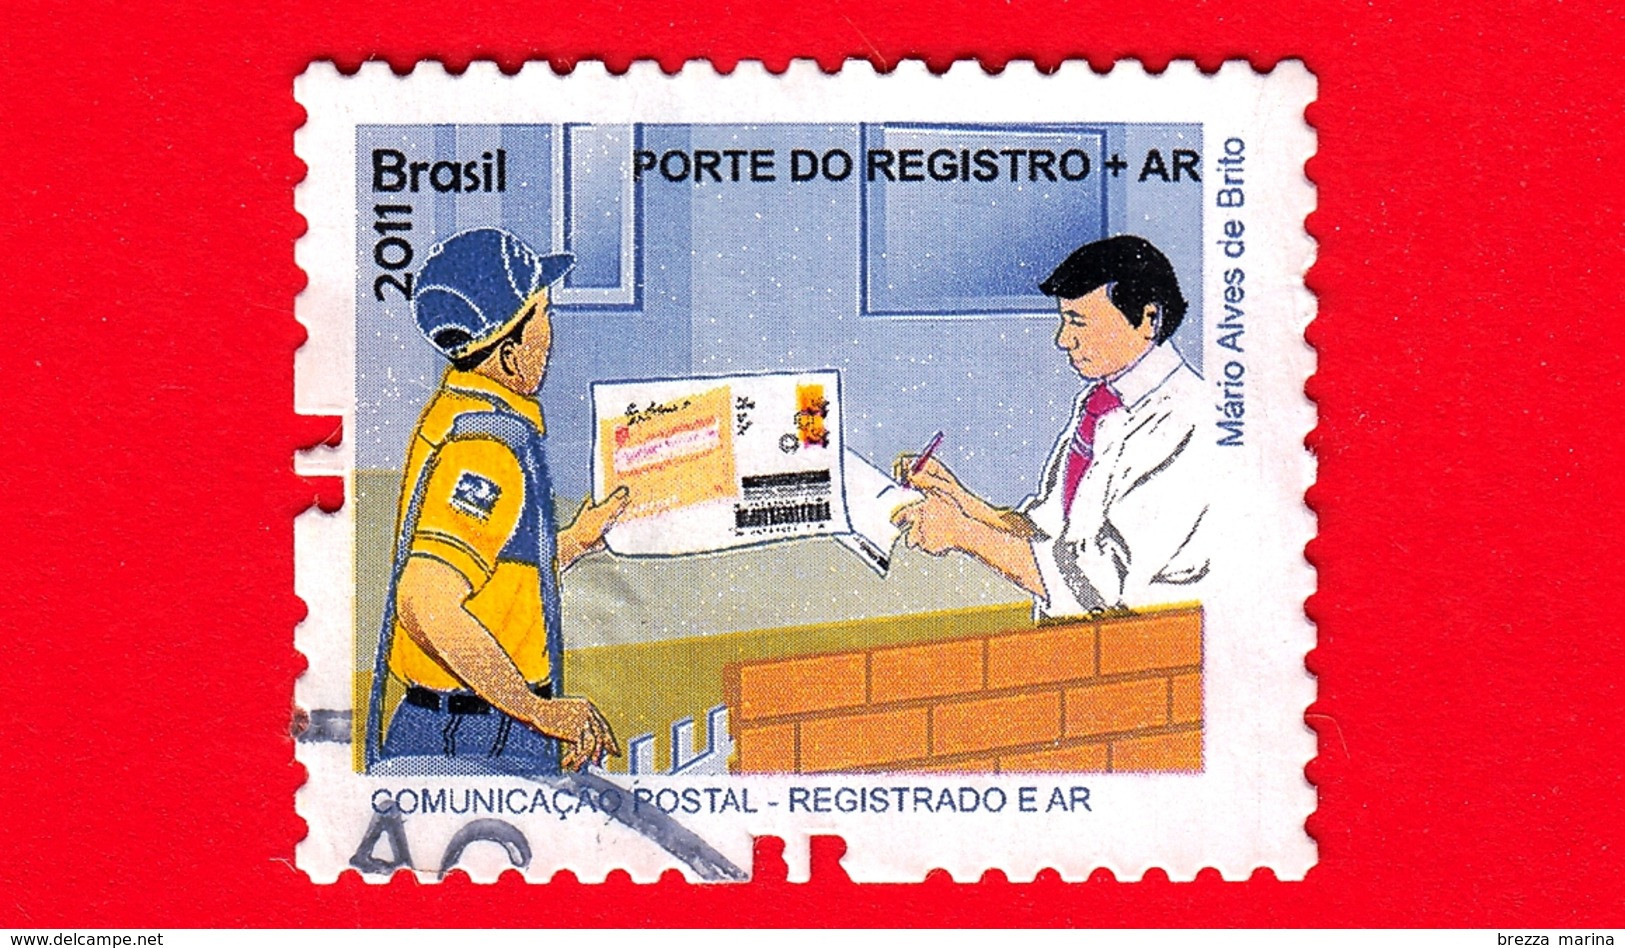 BRASILE - Usato - 2011 - Prodotti E Servizi Postali - Post Office - Porte Do Registro + AR - No Valore Facciale - Gebraucht